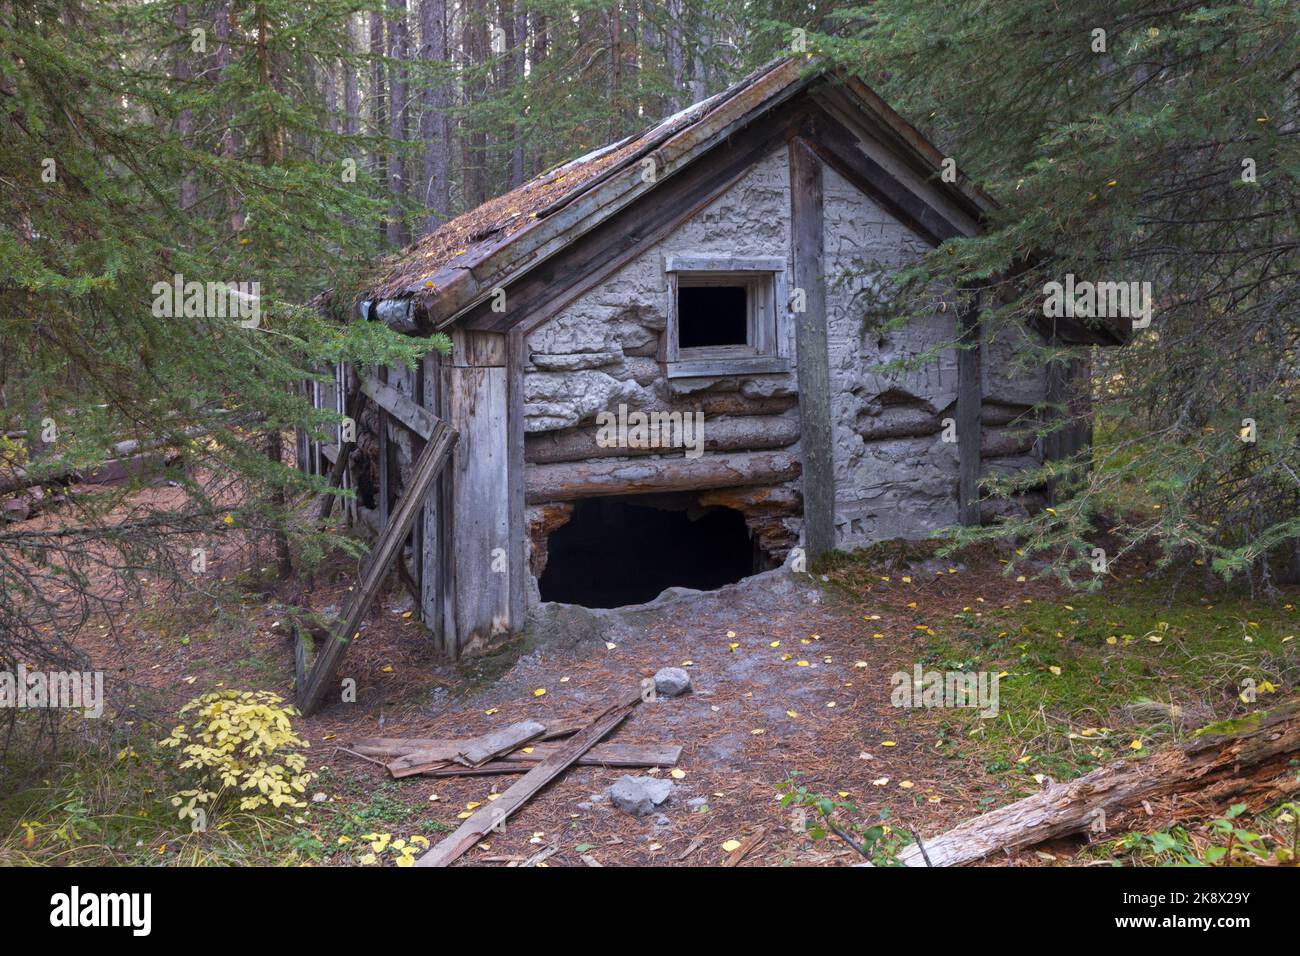 L'ermite d'Inglismaldie, primitive secrète Old Heritage en ruine de cabane en rondins de bois pourrissant dans la forêt sauvage, parc national Banff Alberta Canada Banque D'Images